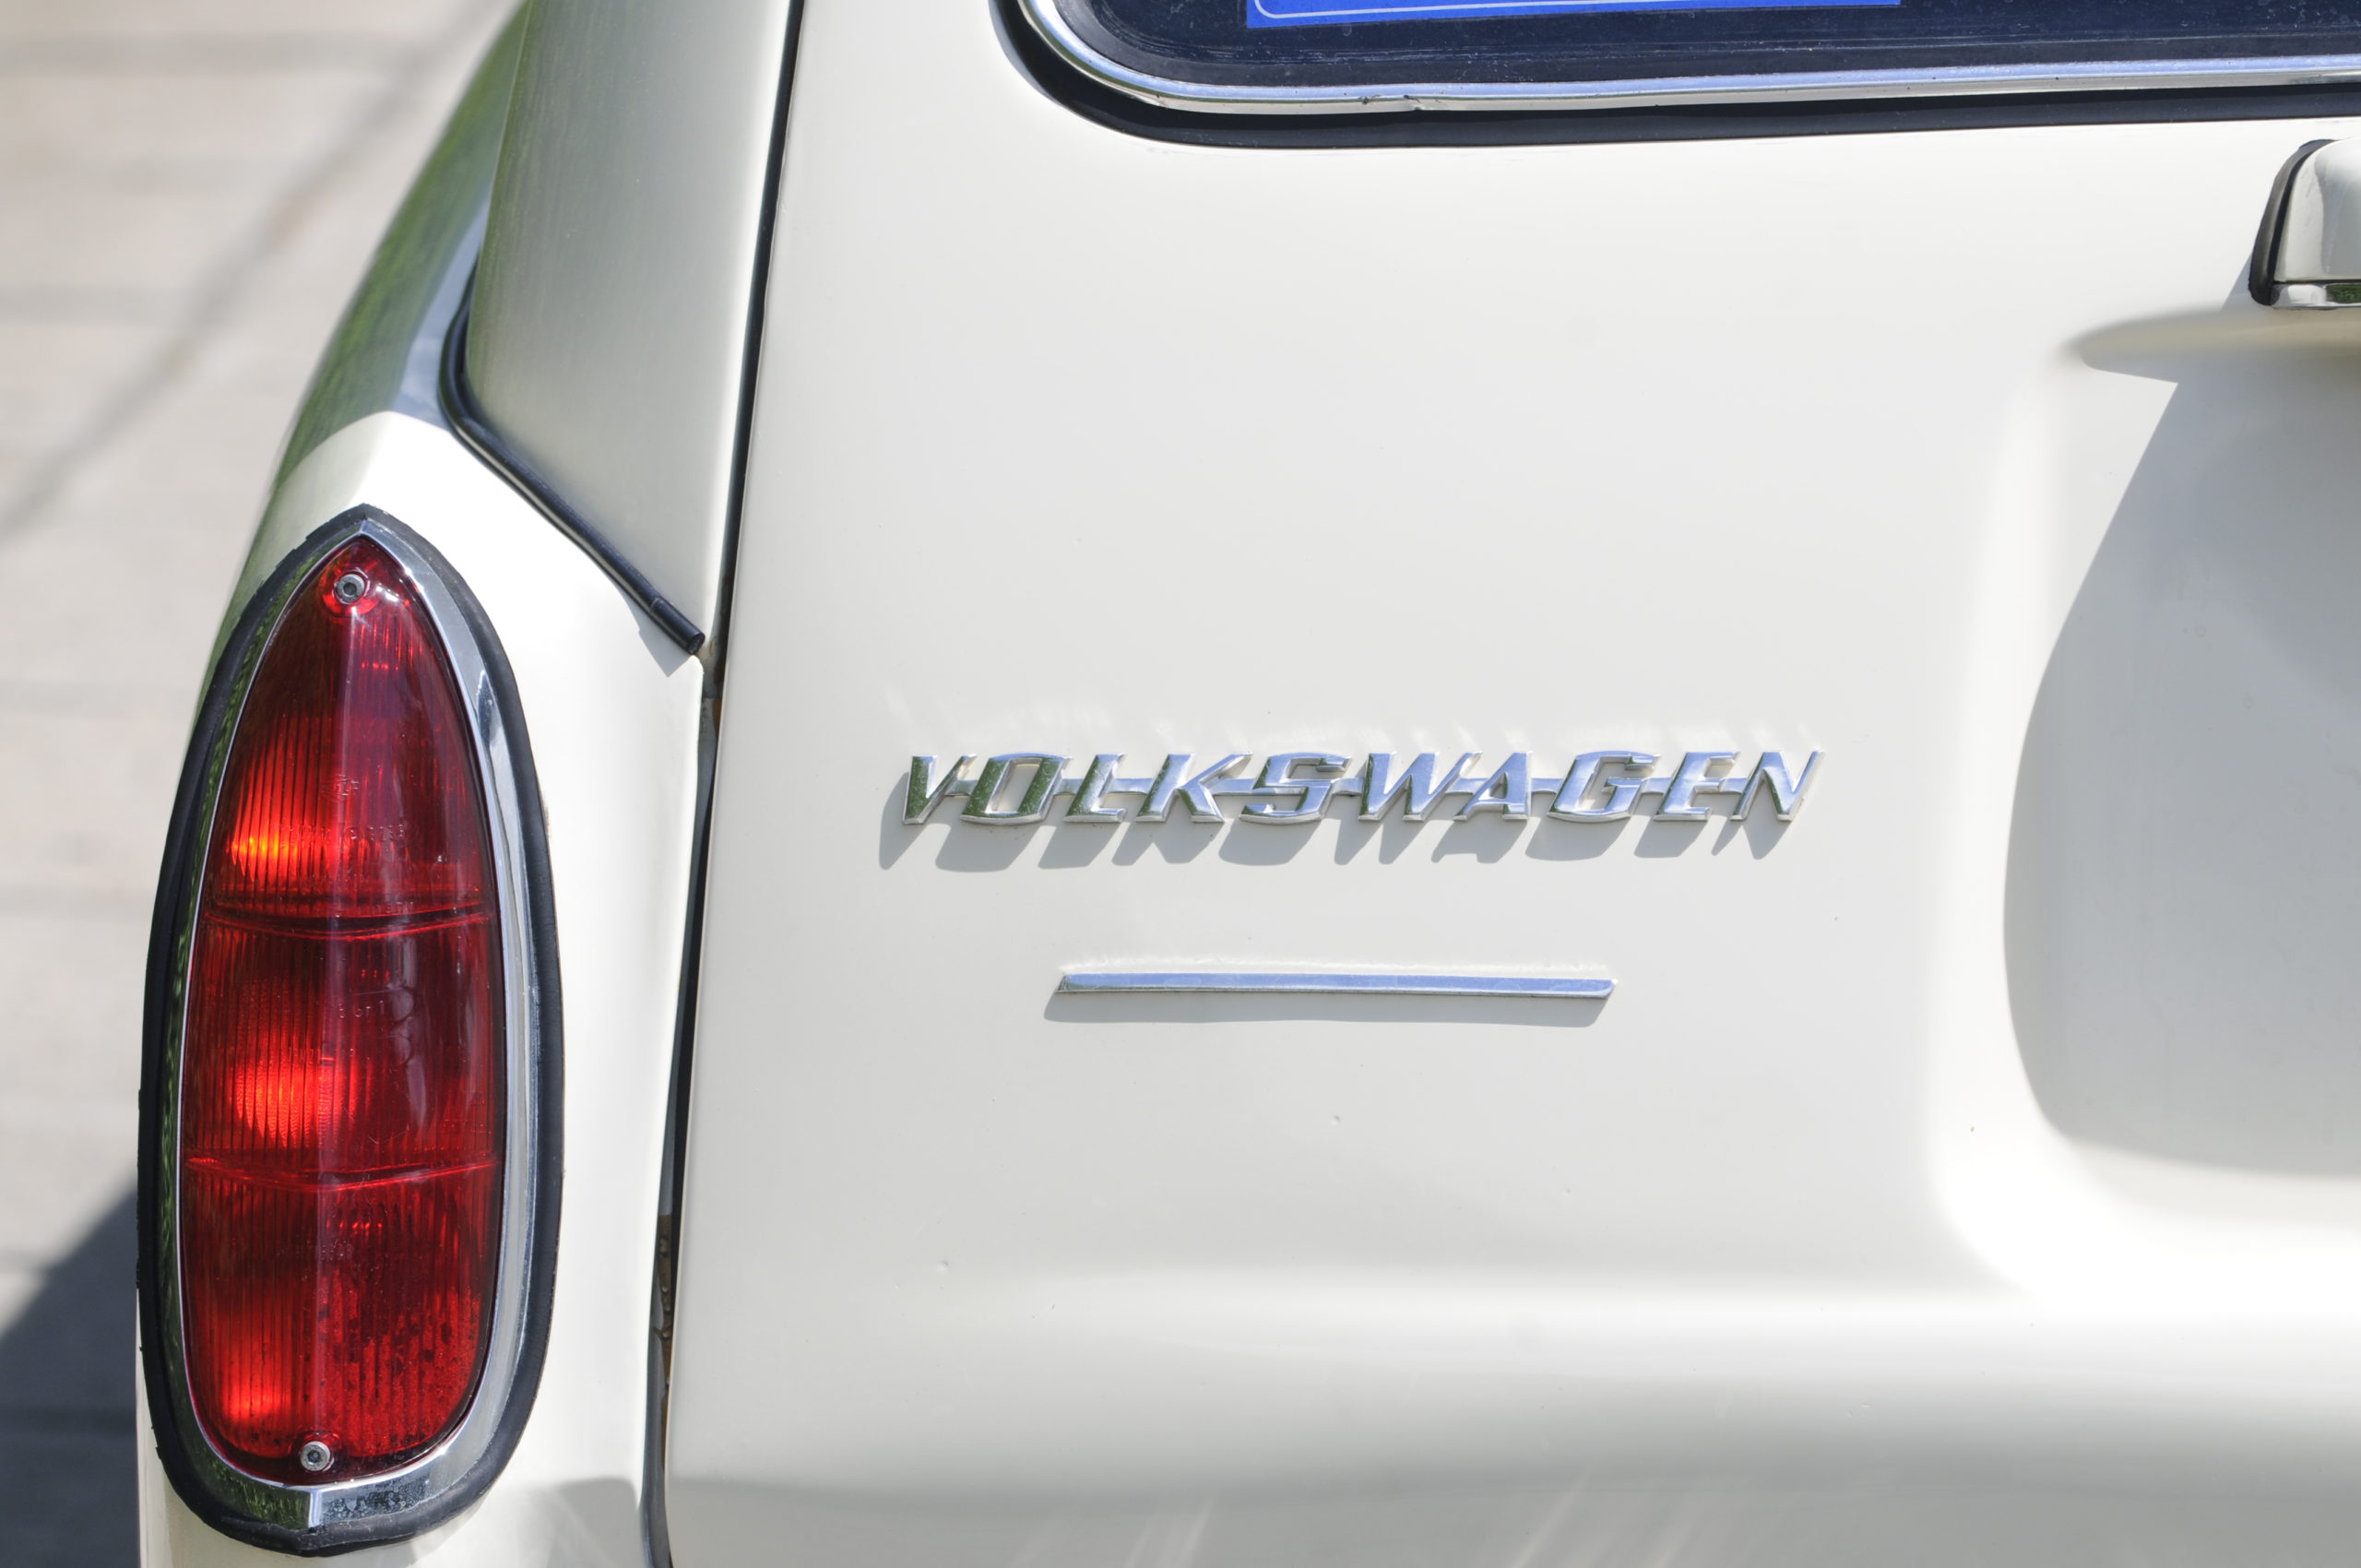 VW Typ3 Variant chromowany napis volkswagen